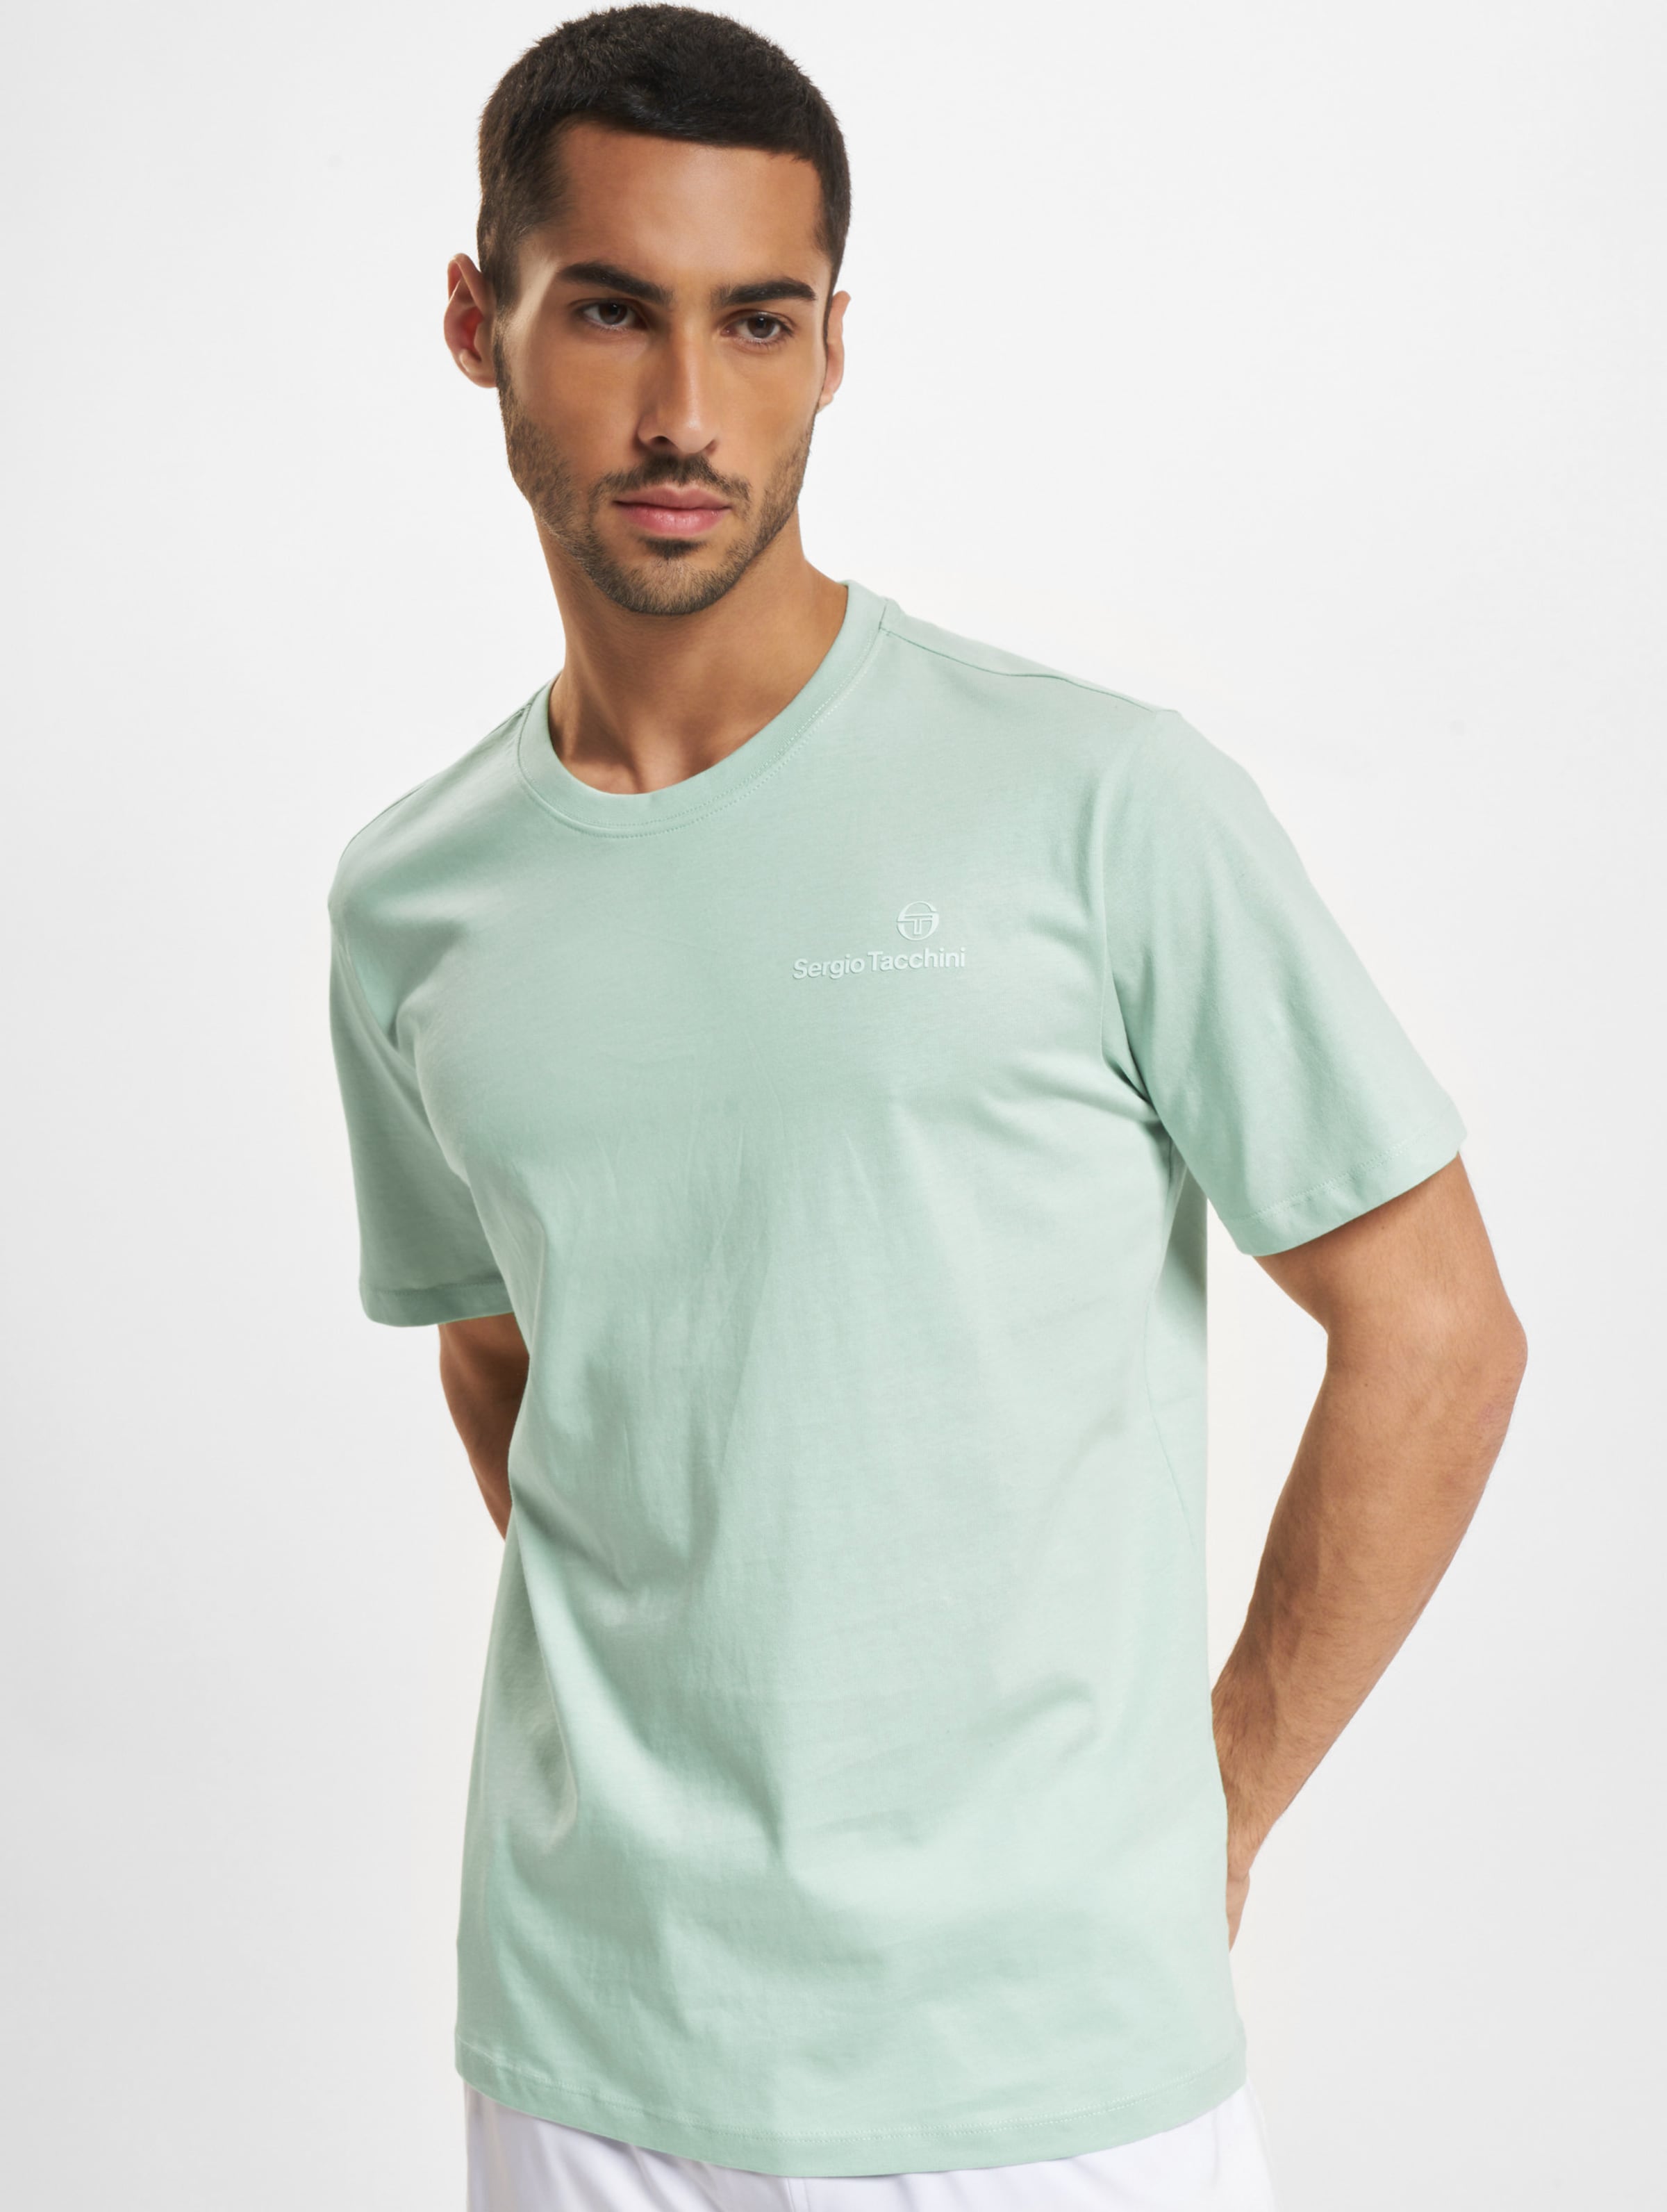 Sergio Tacchini Bold Co T-Shirt Mannen op kleur groen, Maat 3XL